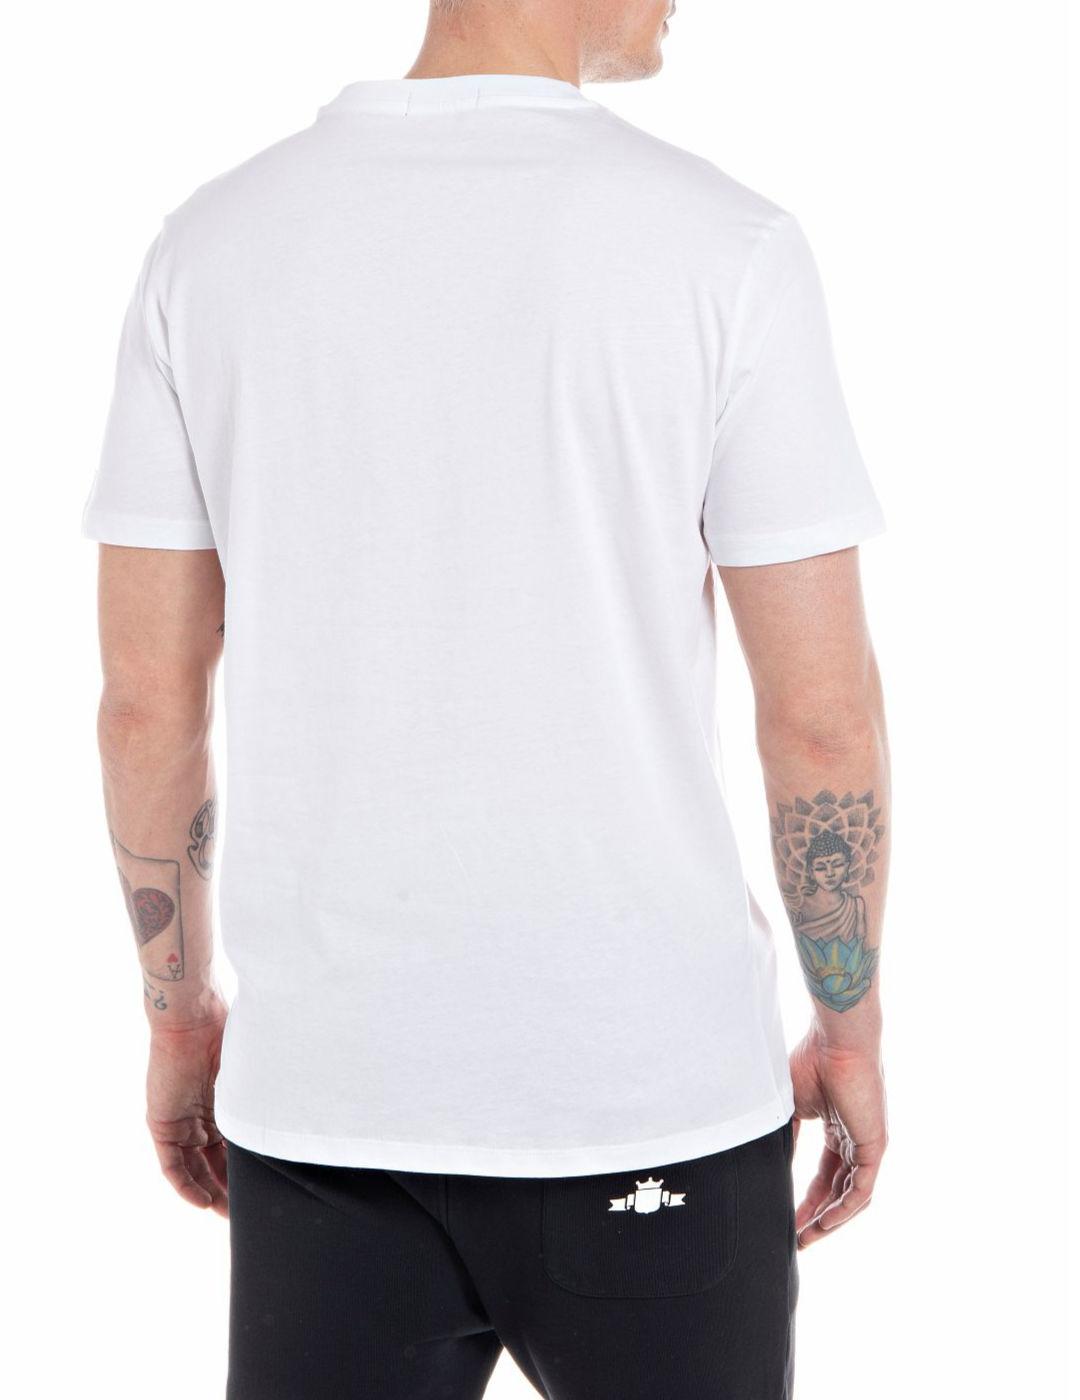 Camiseta Replay blanca con logo negro manga corta de hombre